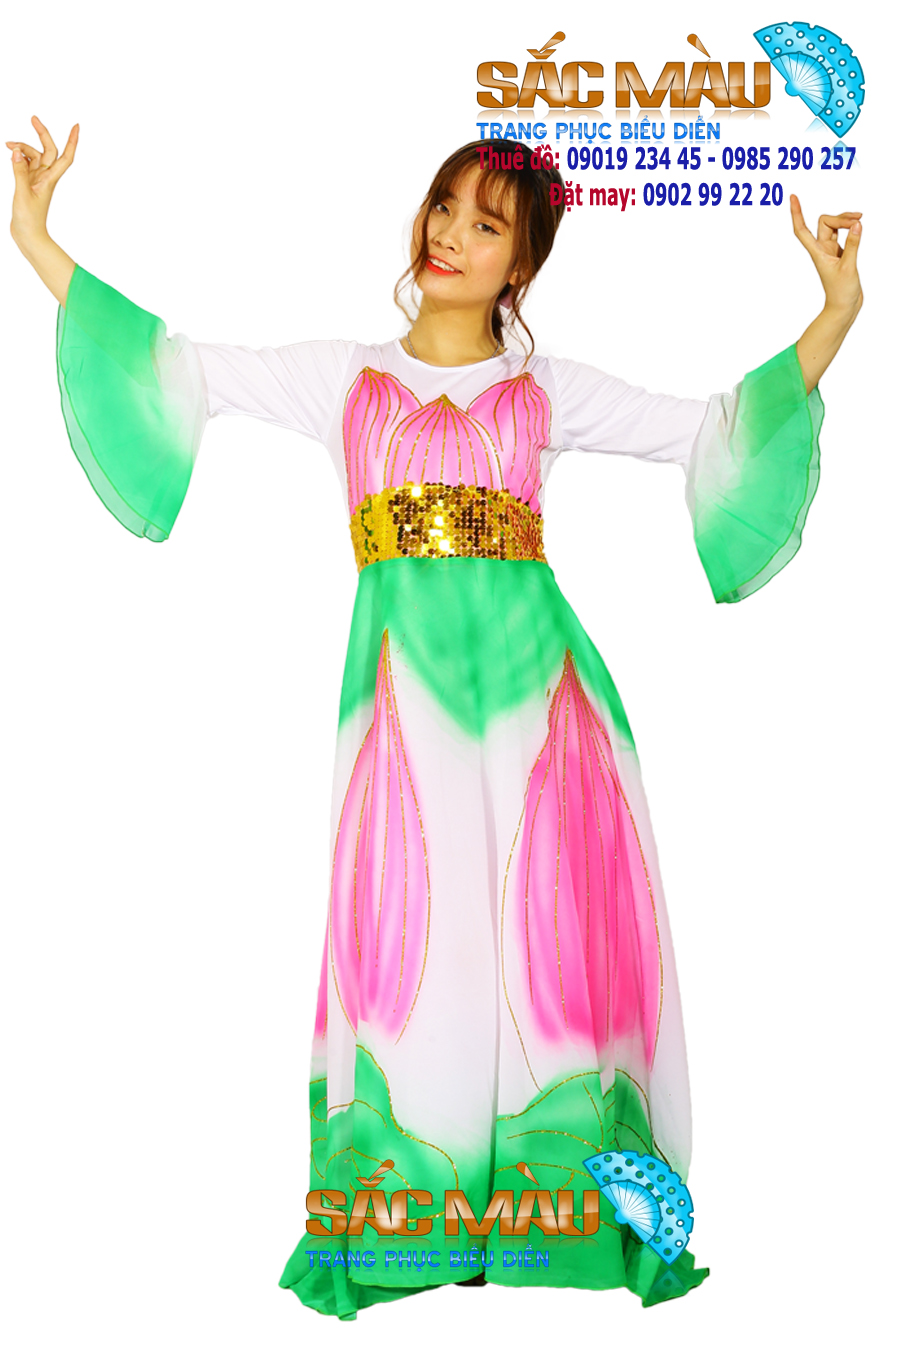 Thuê Váy Múa Giá Rẻ Và Đẹp Nhất Sài Gòn  Mẫu Mã Đa Dạng  Giá Cả Hợp